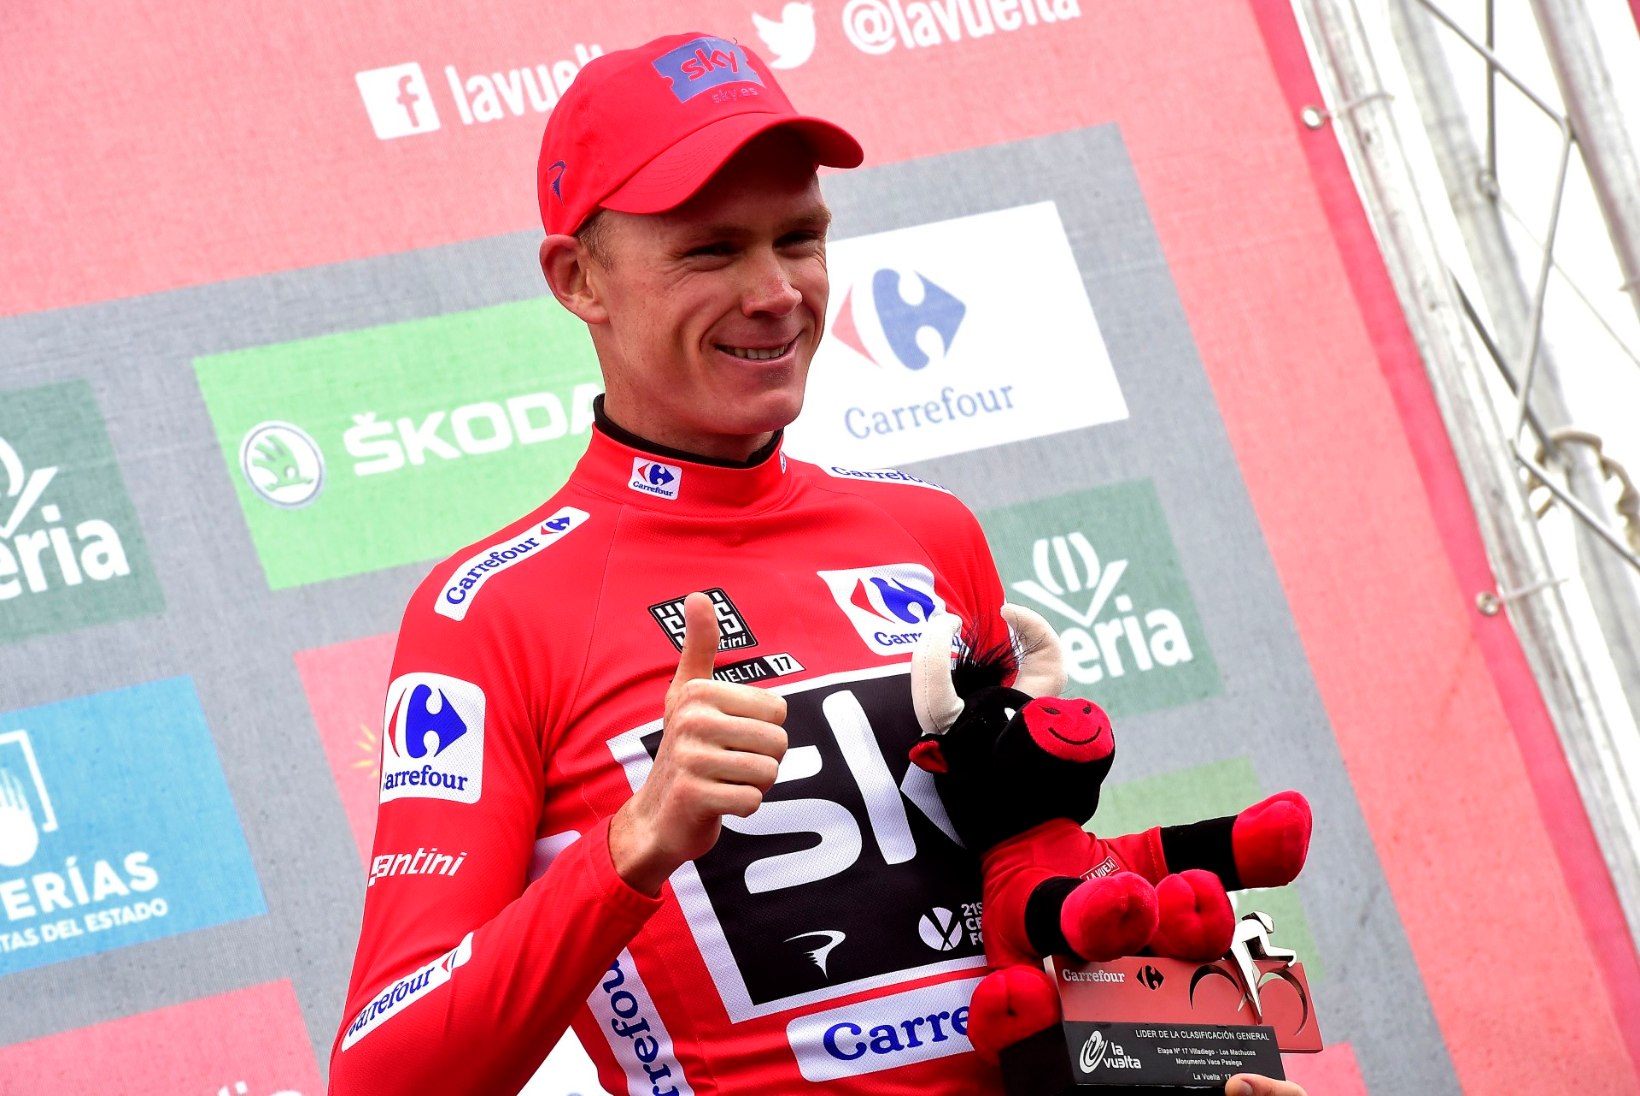 PALJU ÕNNE! 2011. aasta Vuelta võitja on Chris Froome!